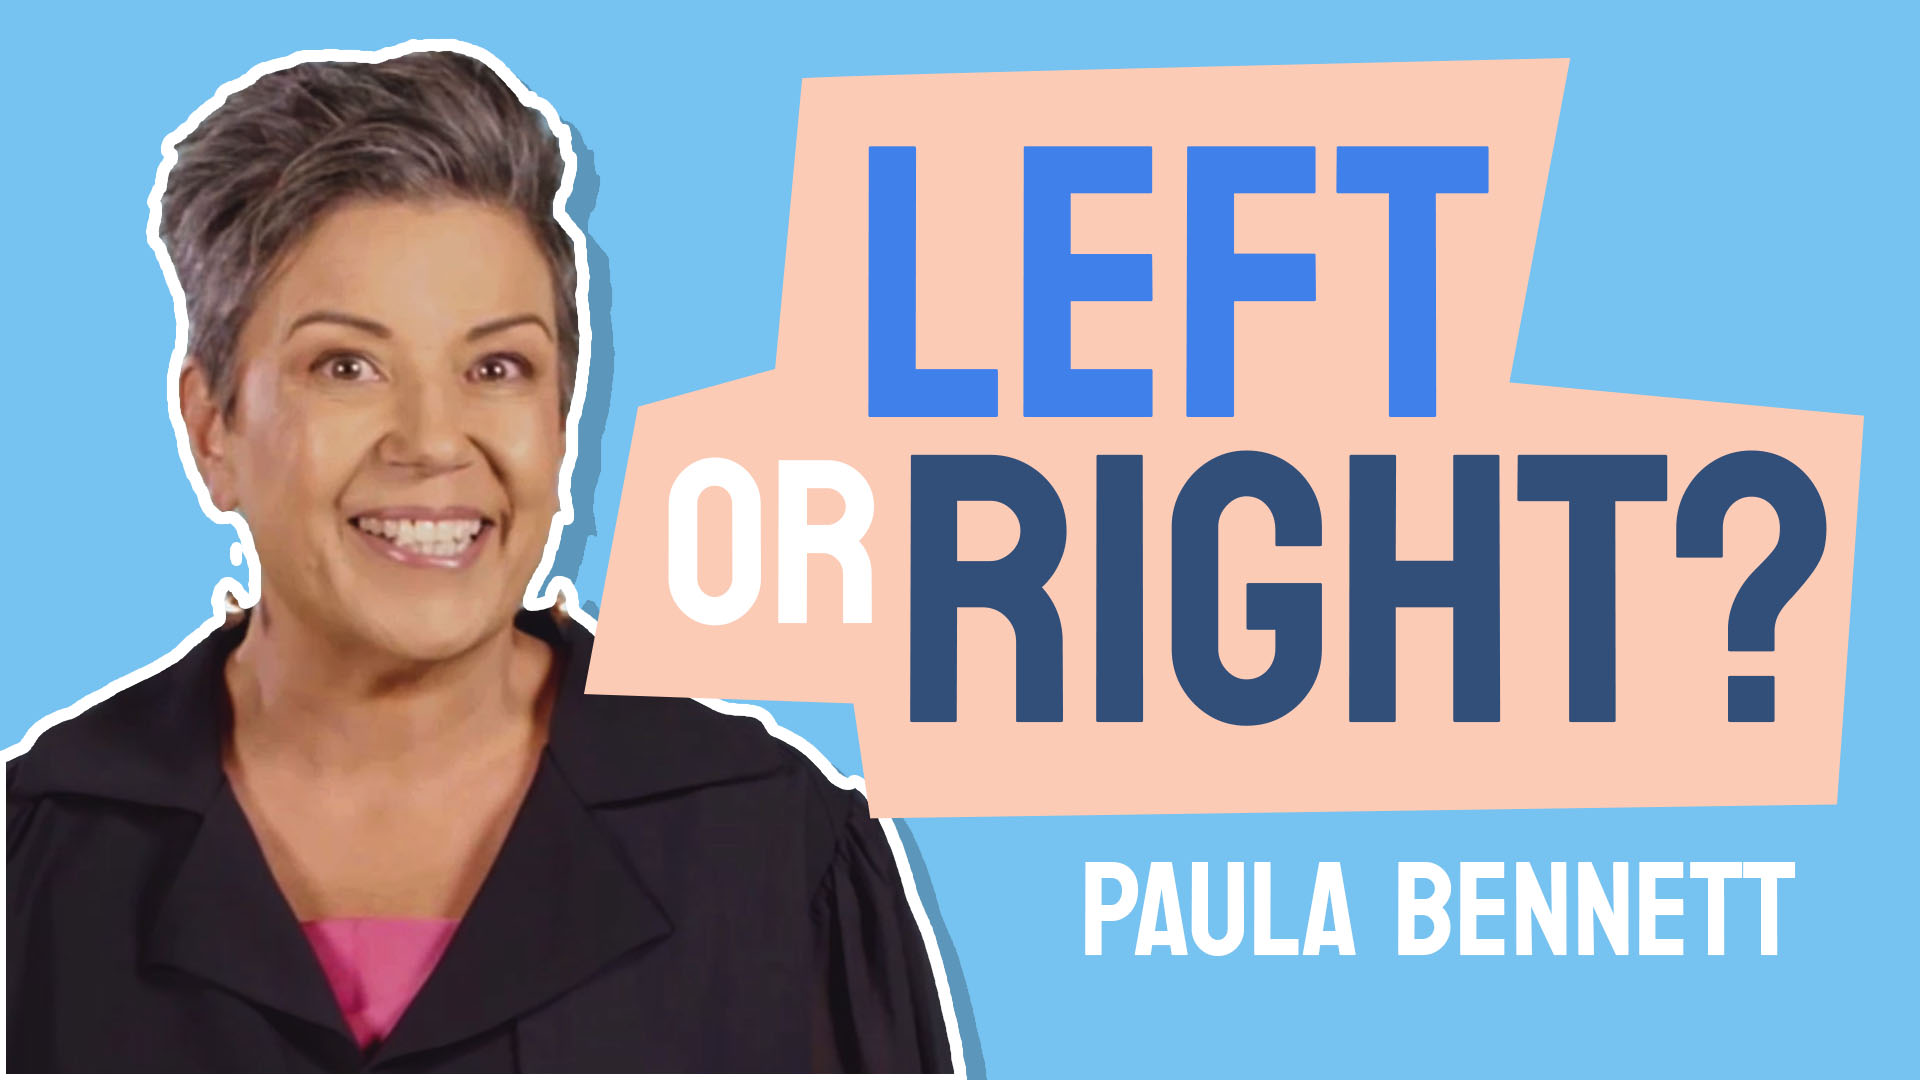 Paula Bennett: Left or Right?